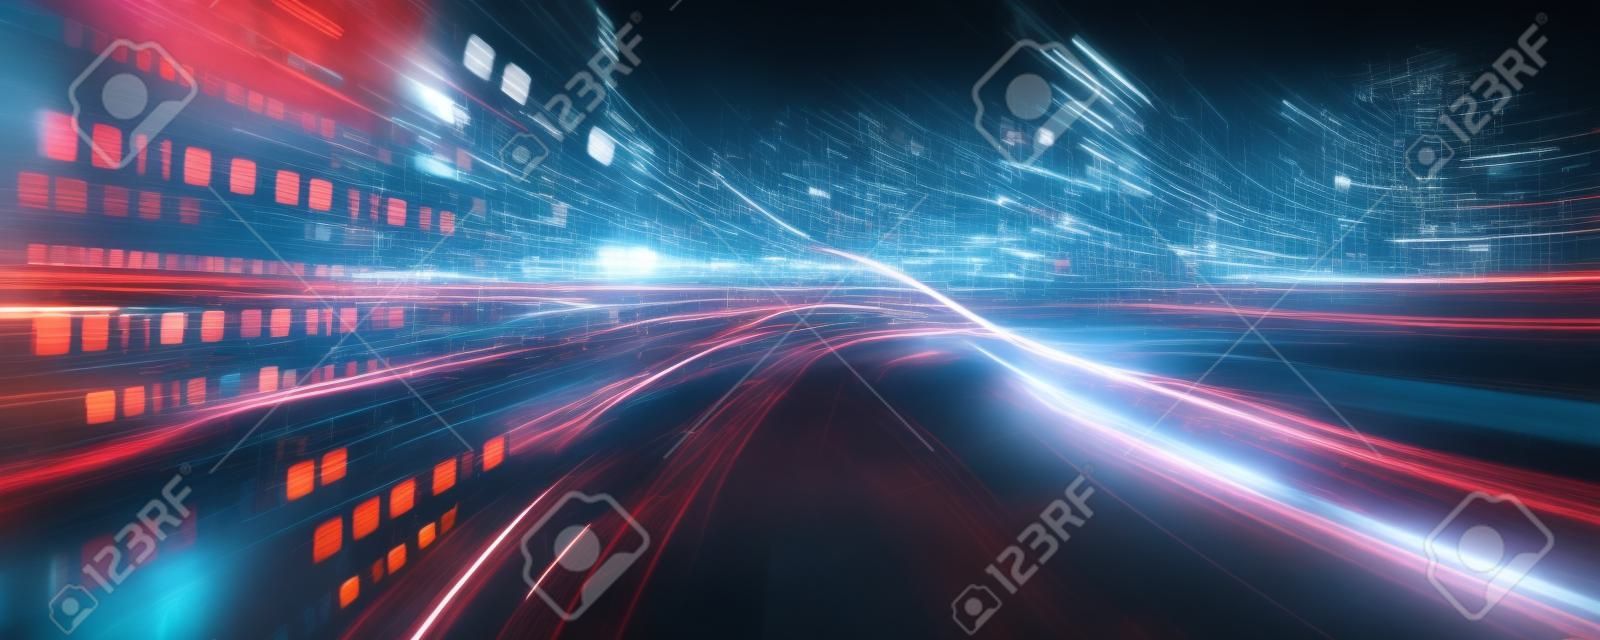 Fluxo de dados digitais na estrada com motion blur para criar visão de transferência de velocidade rápida. Conceito de transformação digital futura, inovação disruptiva e metodologia de negócios ágil.